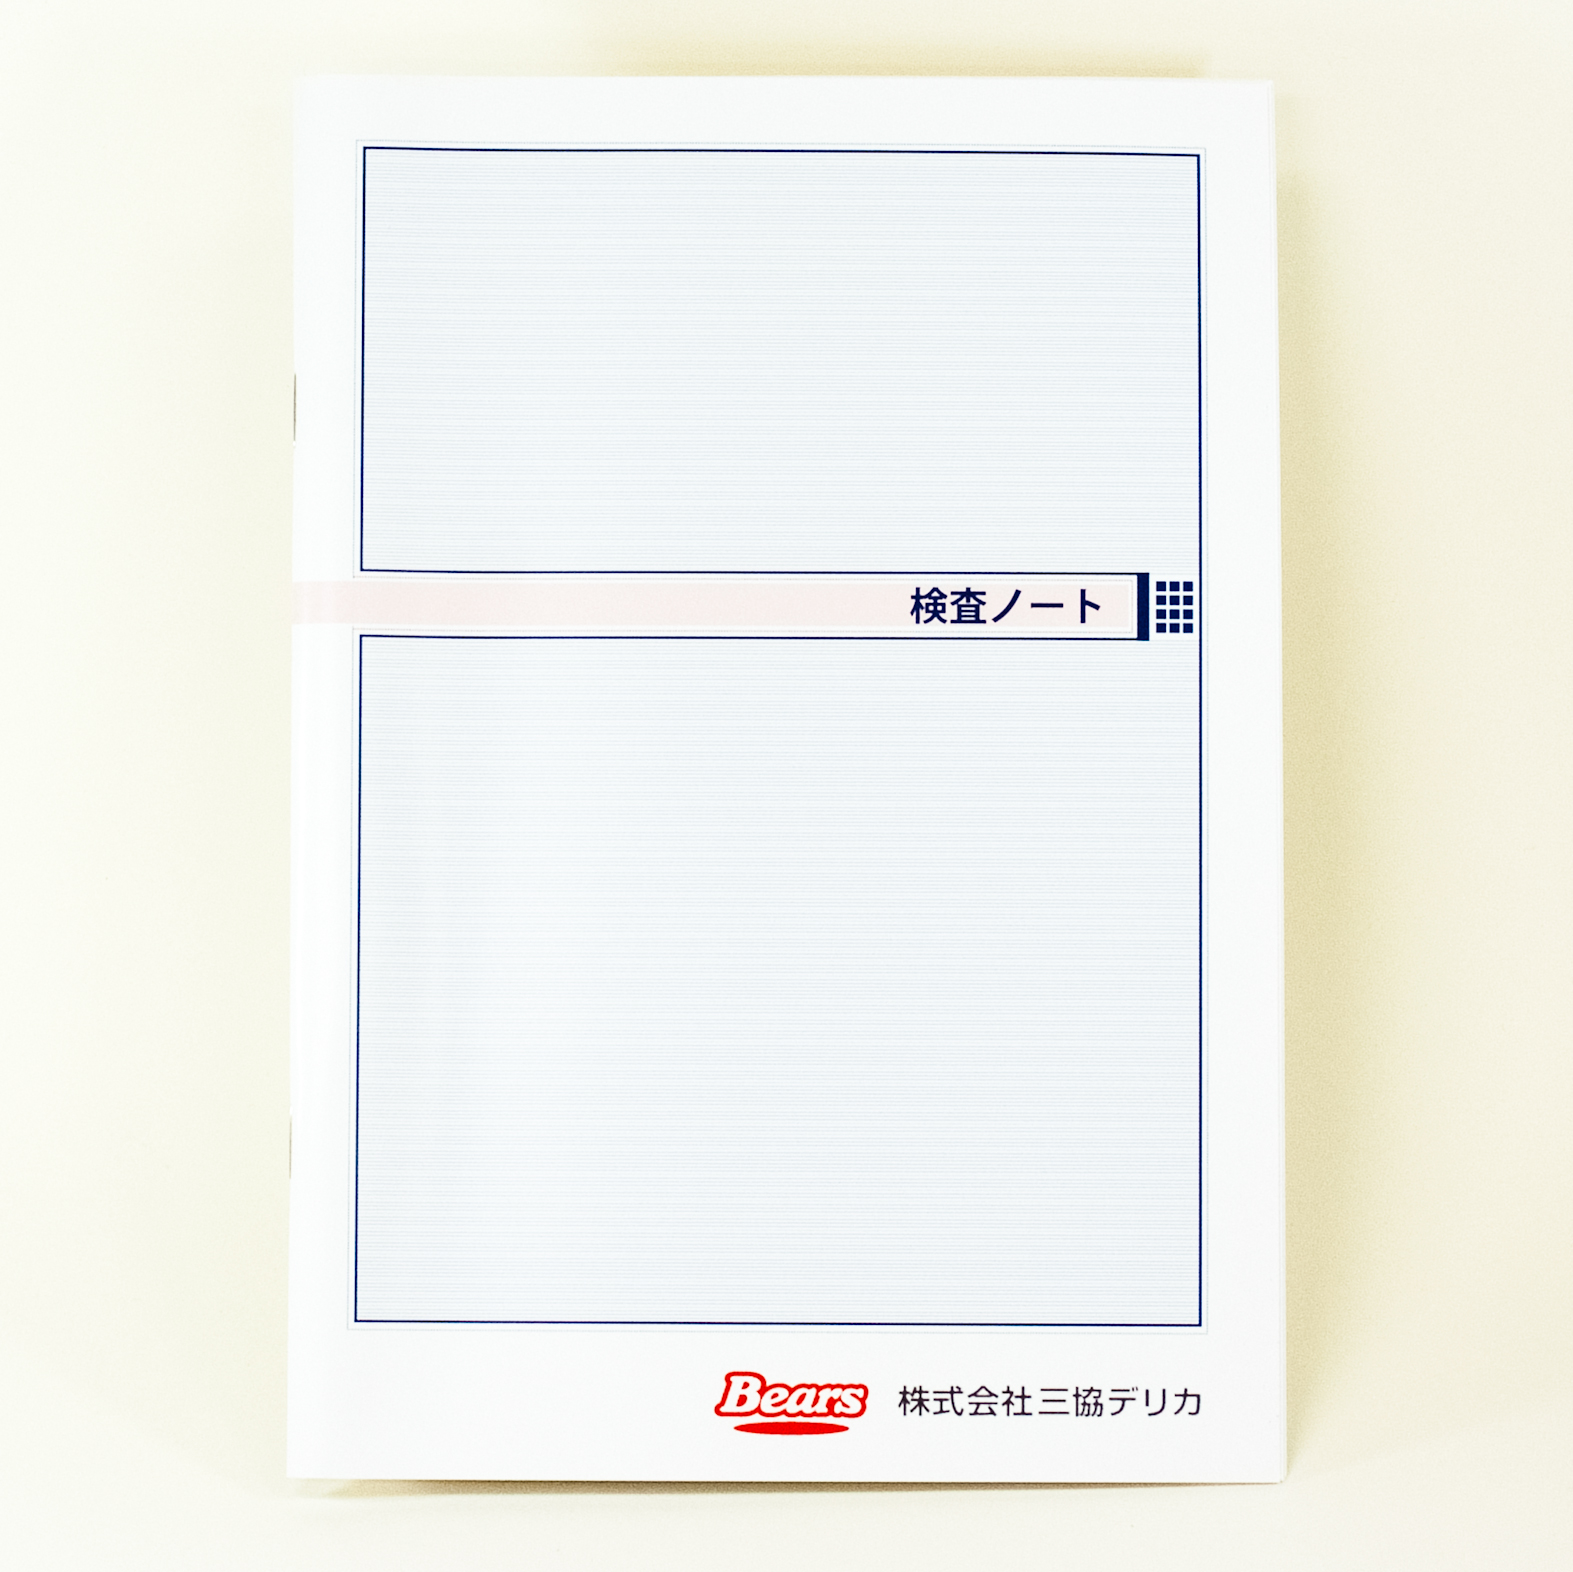 「株式会社三協デリカ 様」製作のオリジナルノート